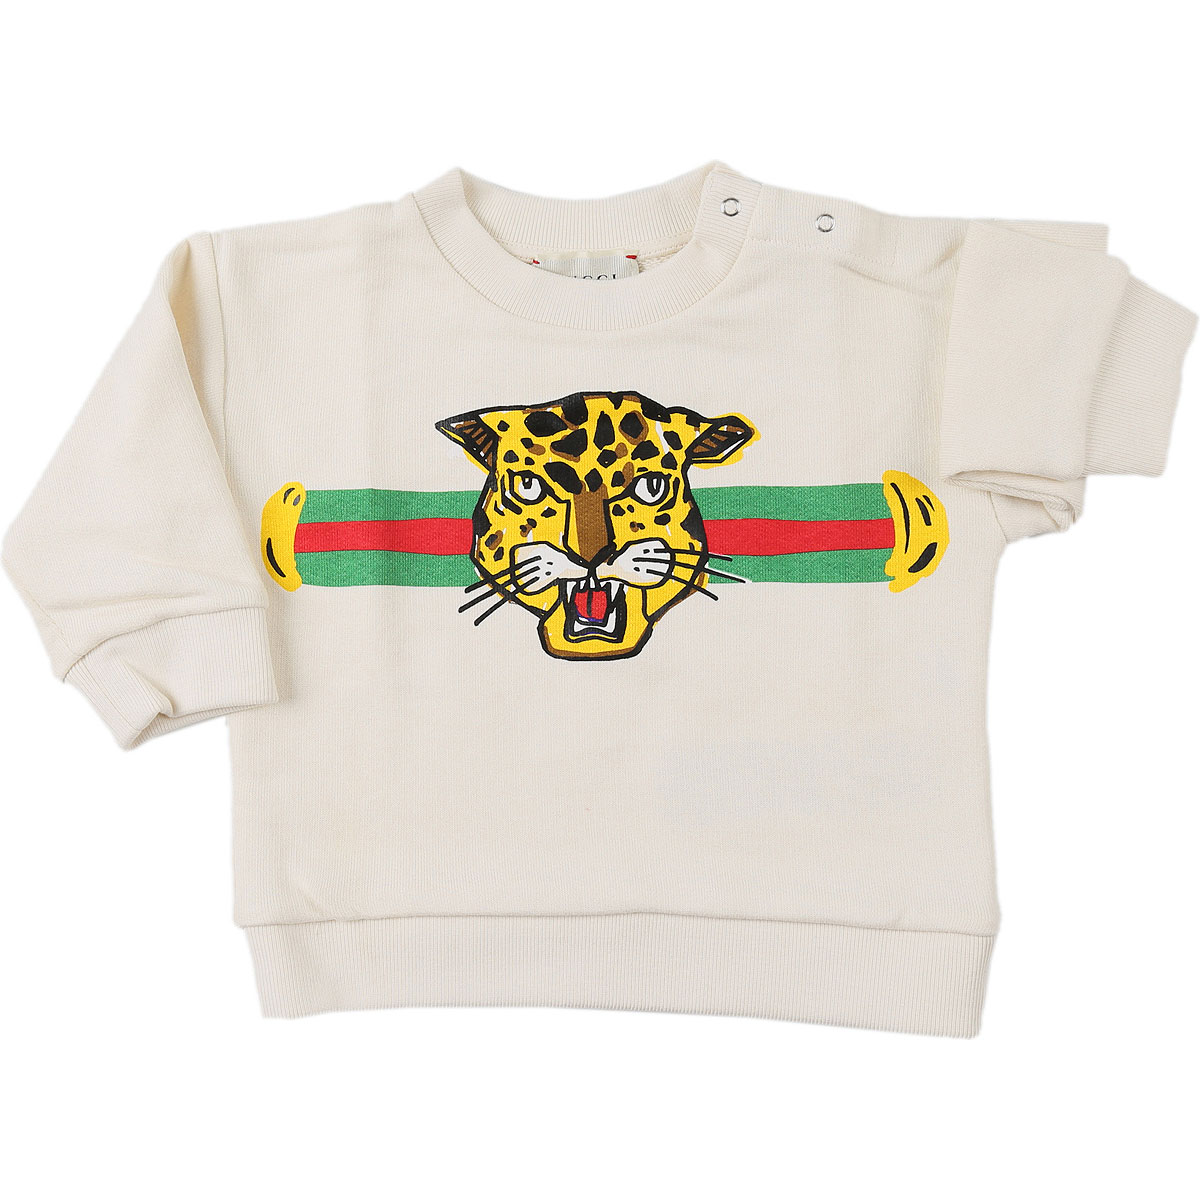 Gucci Baby Sweatshirt & Kapuzenpullover für Jungen Günstig im Sale, Weiss, Baumwolle, 2017, 18M 3M 3Y